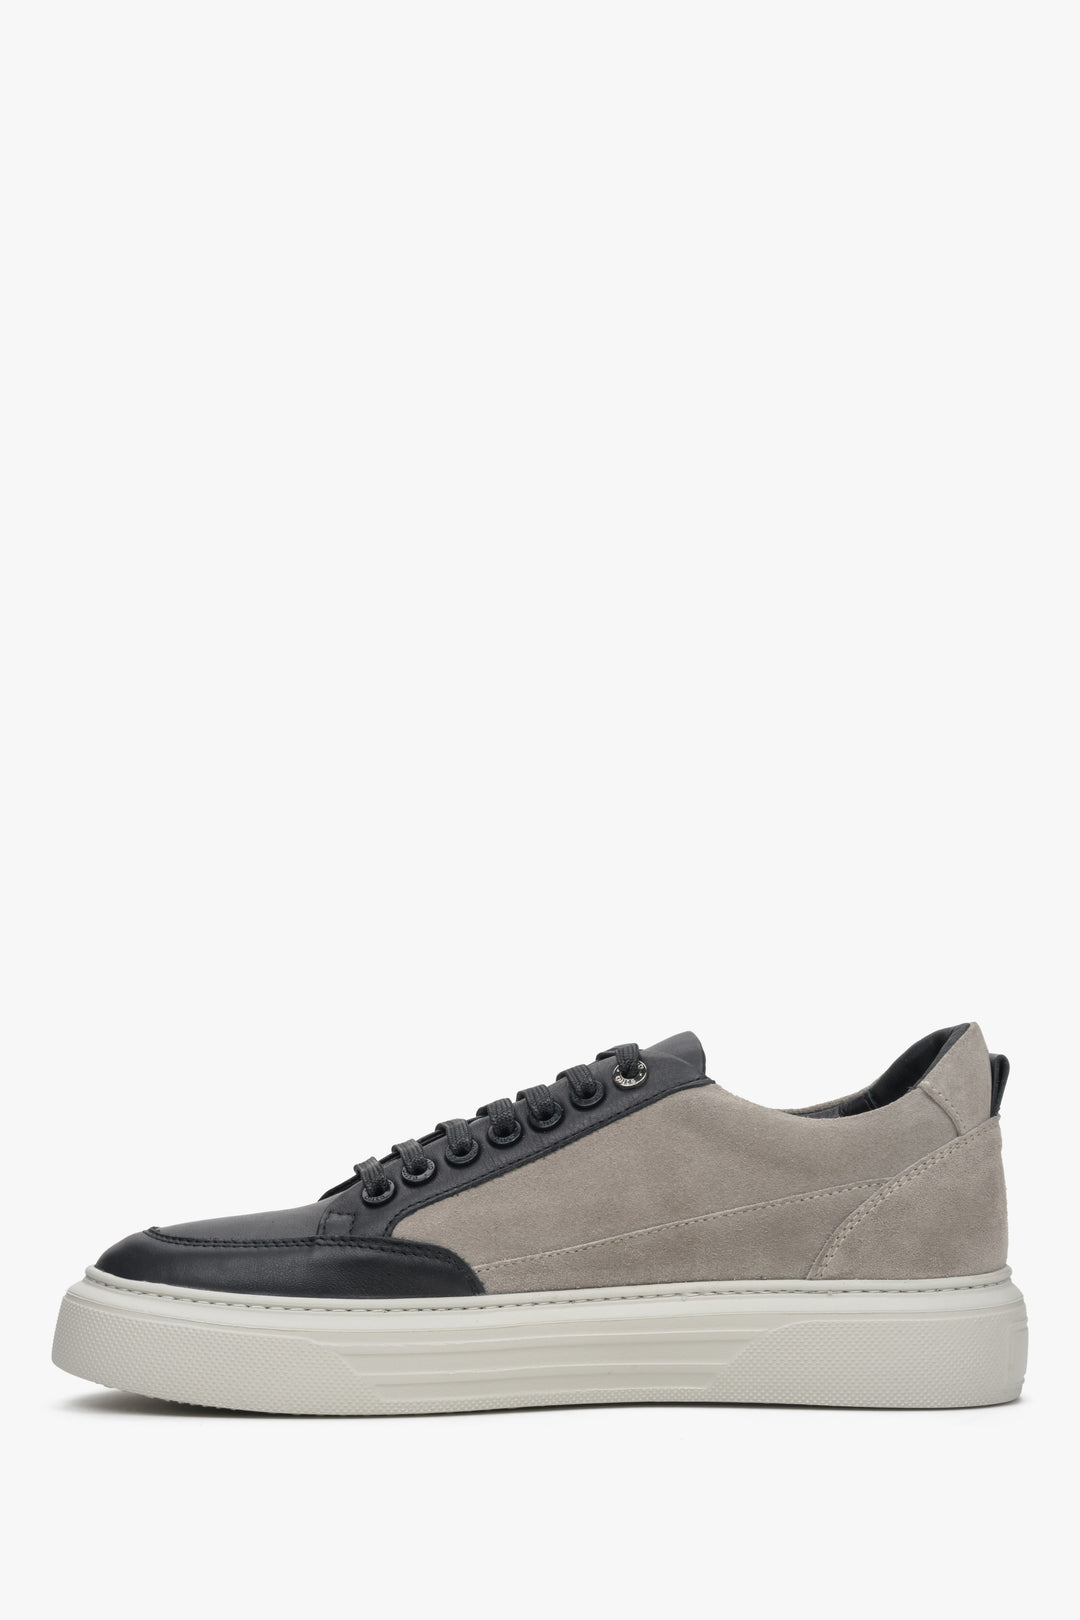 Estro men's lace-up grey-black sneakers - shoe profile.